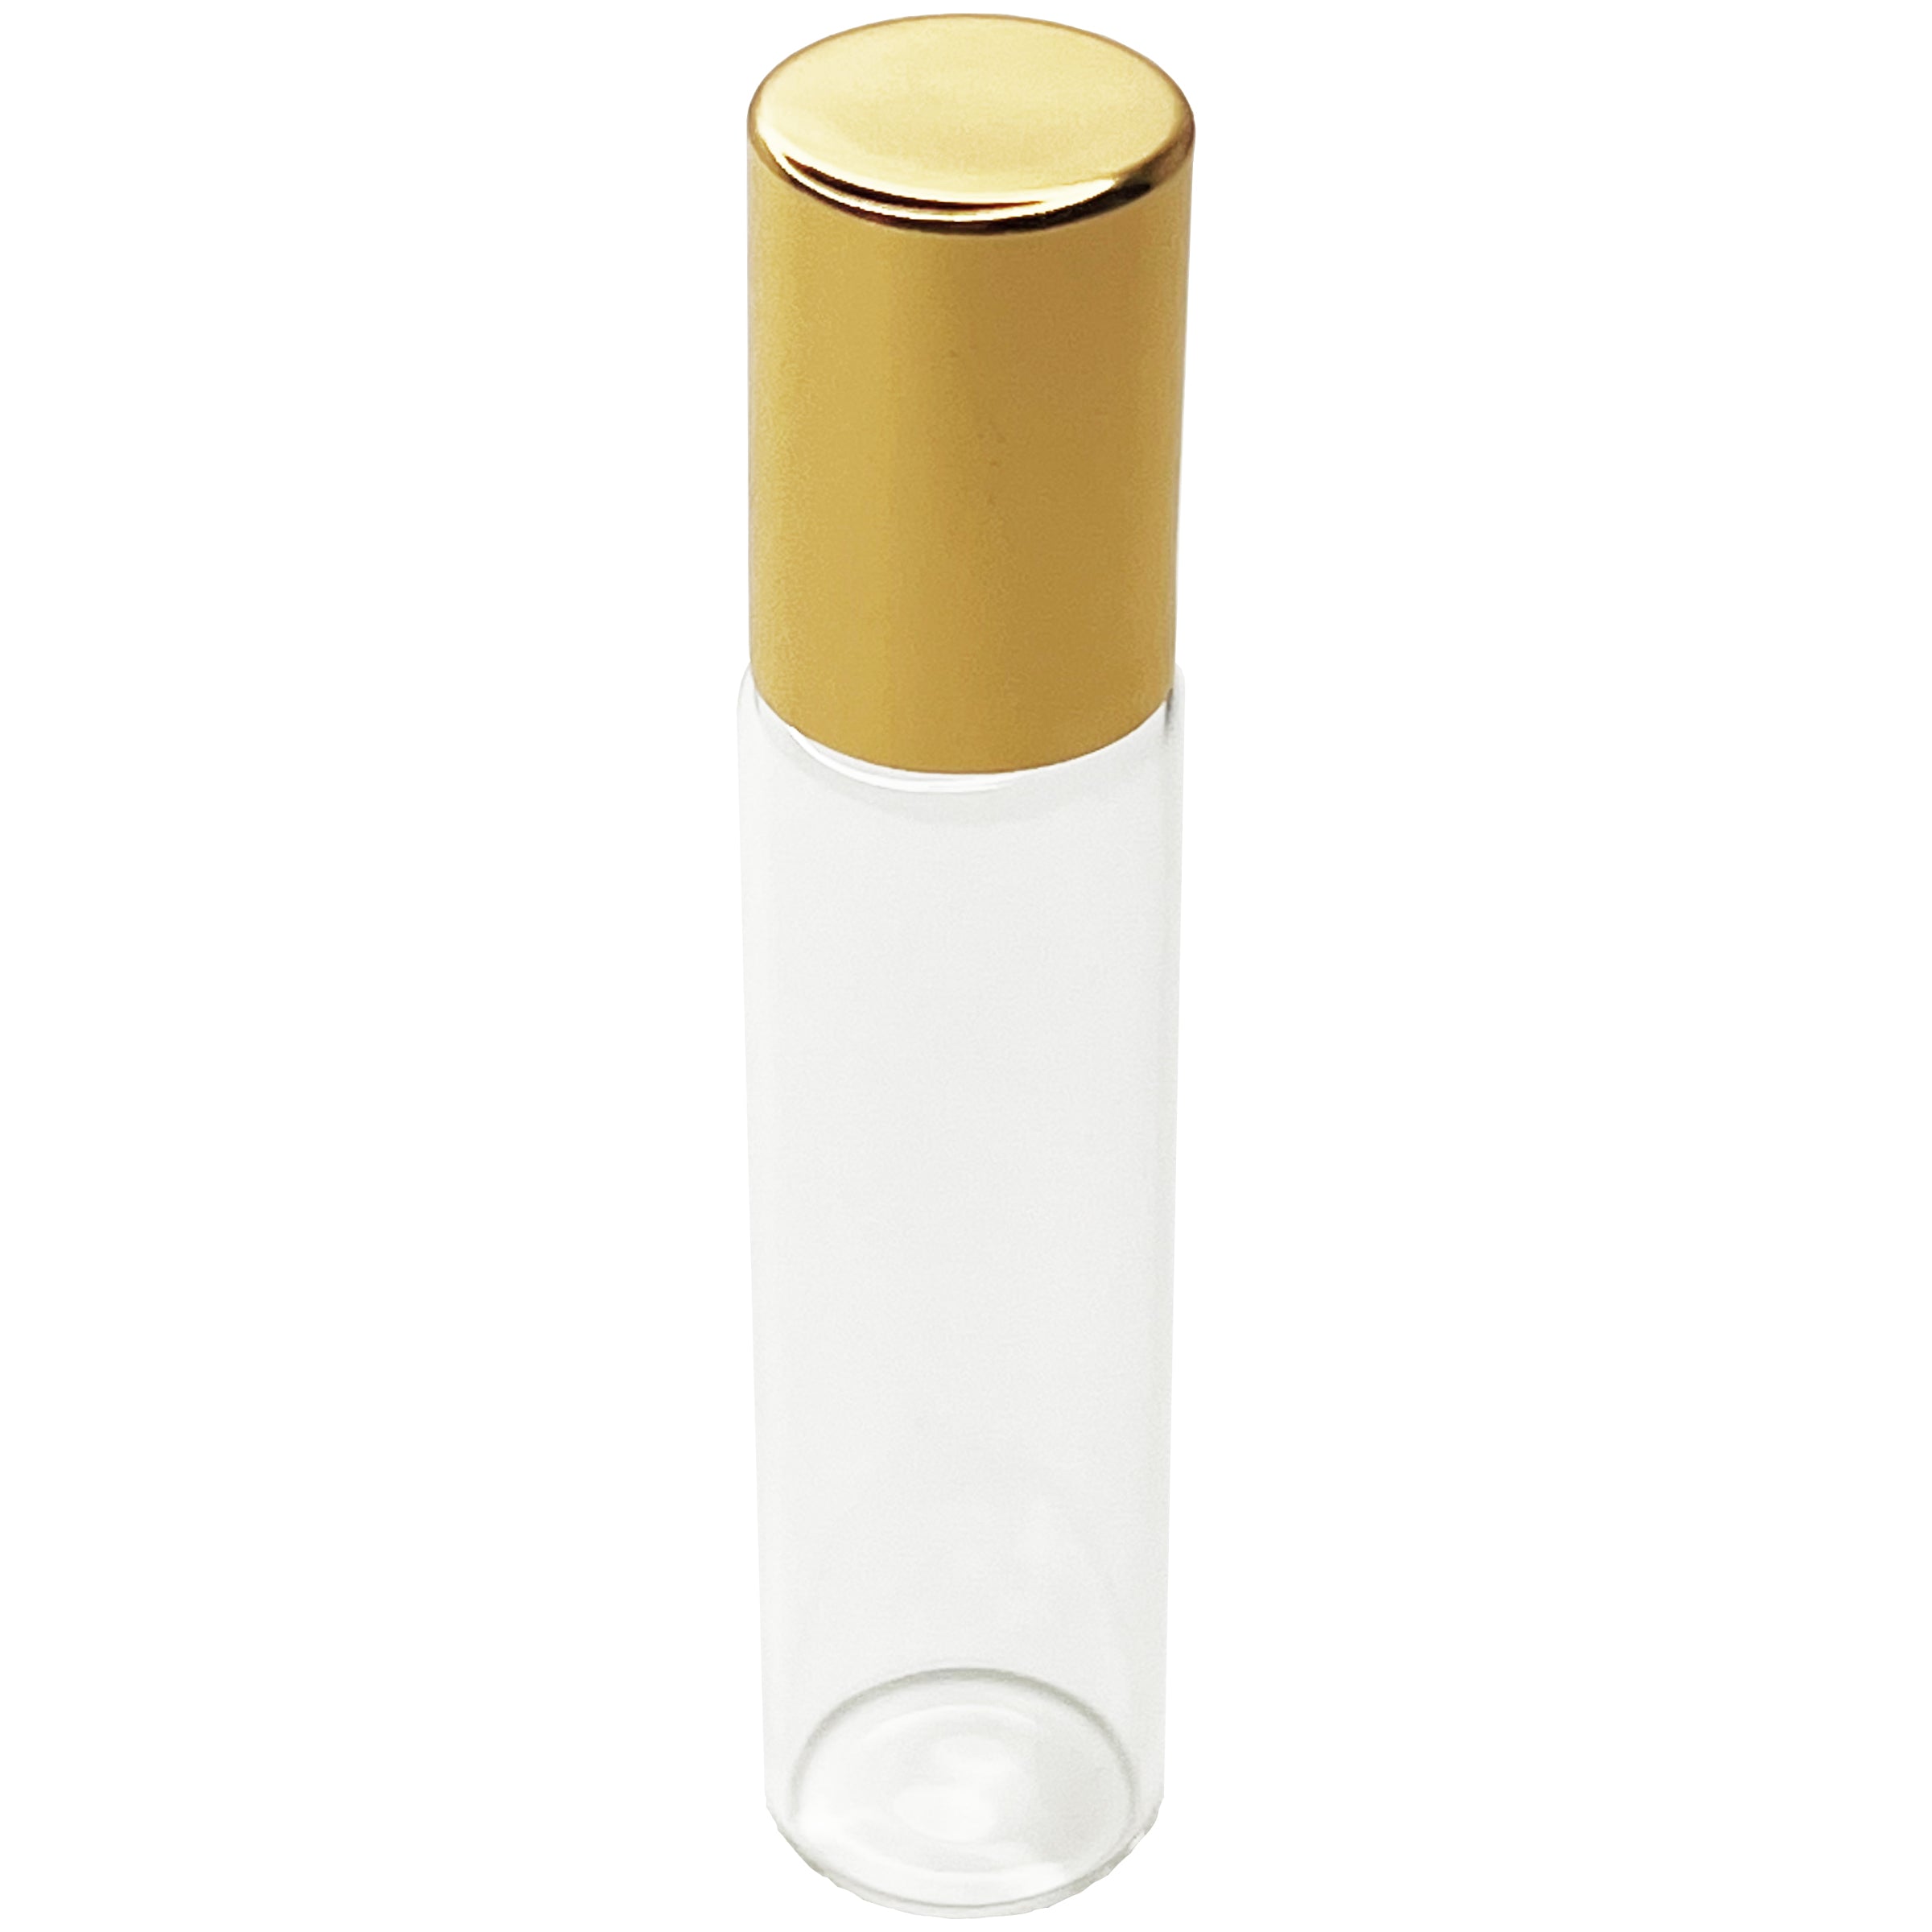 10ml 0.33oz glass tube roll on roller bottles for perfume oils